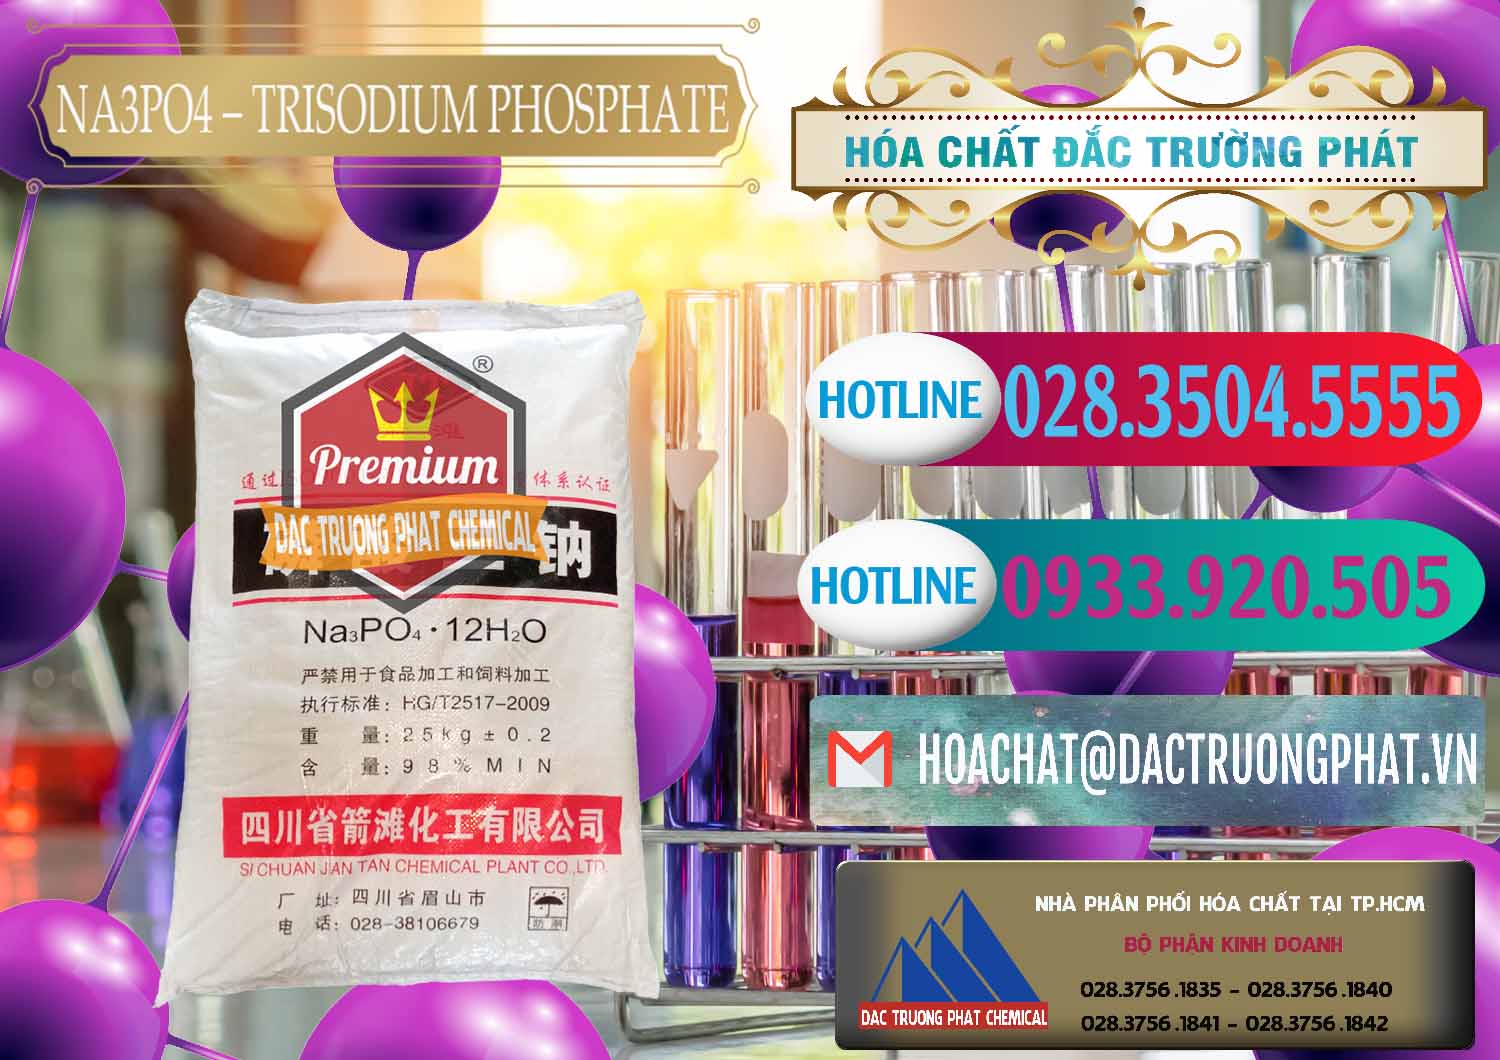 Bán và cung cấp Na3PO4 – Trisodium Phosphate Trung Quốc China JT - 0102 - Chuyên bán _ cung cấp hóa chất tại TP.HCM - truongphat.vn